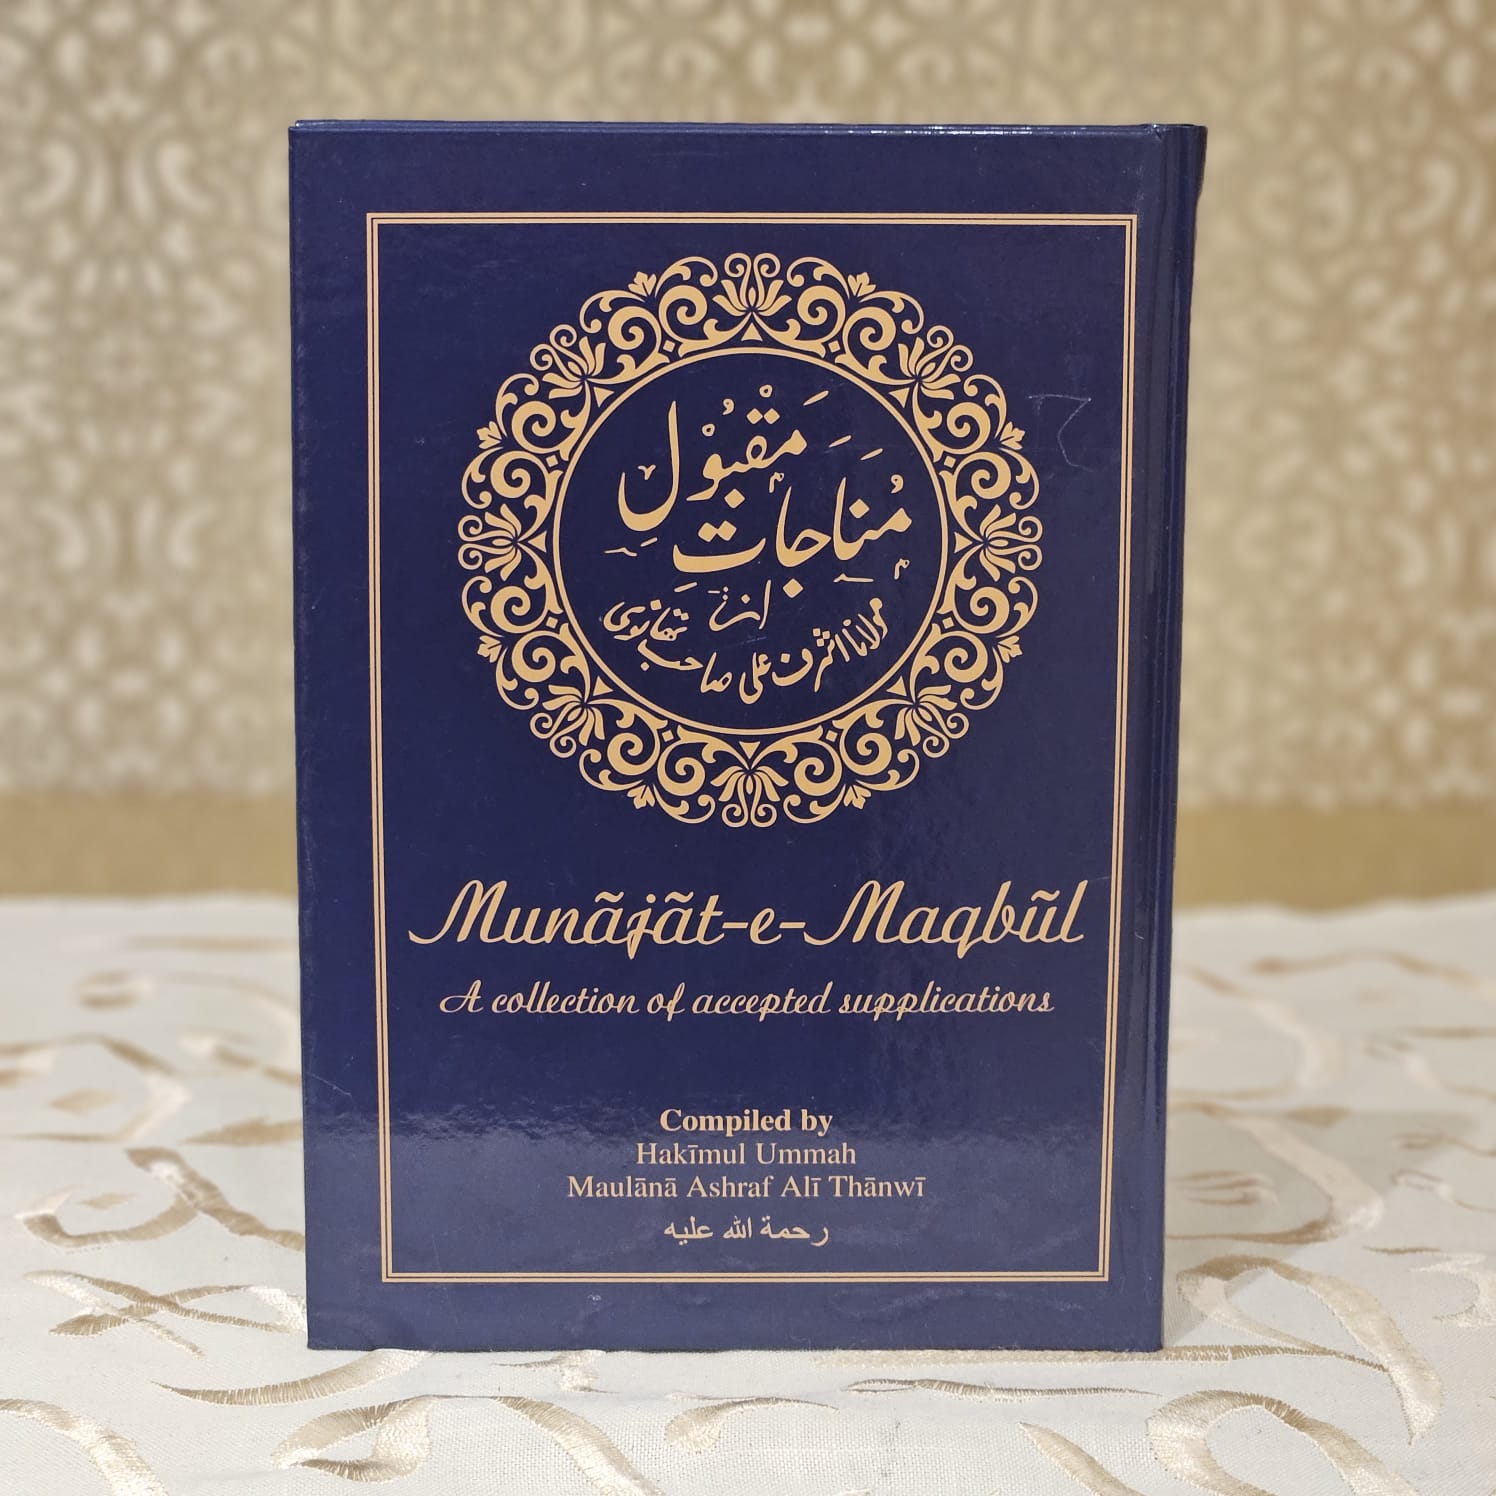 Munajat-e-Maqbul